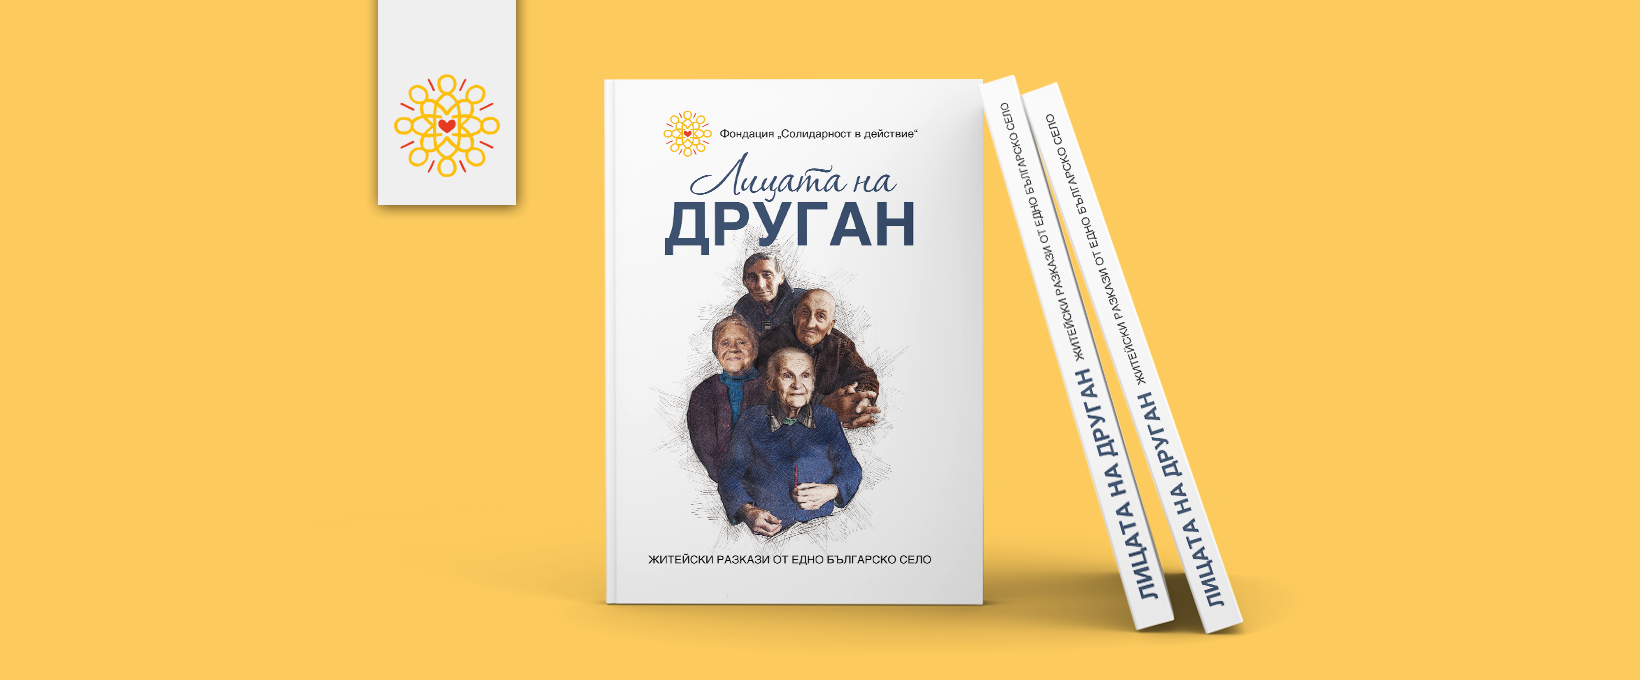 Представяне на сборник ”Лицата на Друган: житейски разкази от едно българско село”